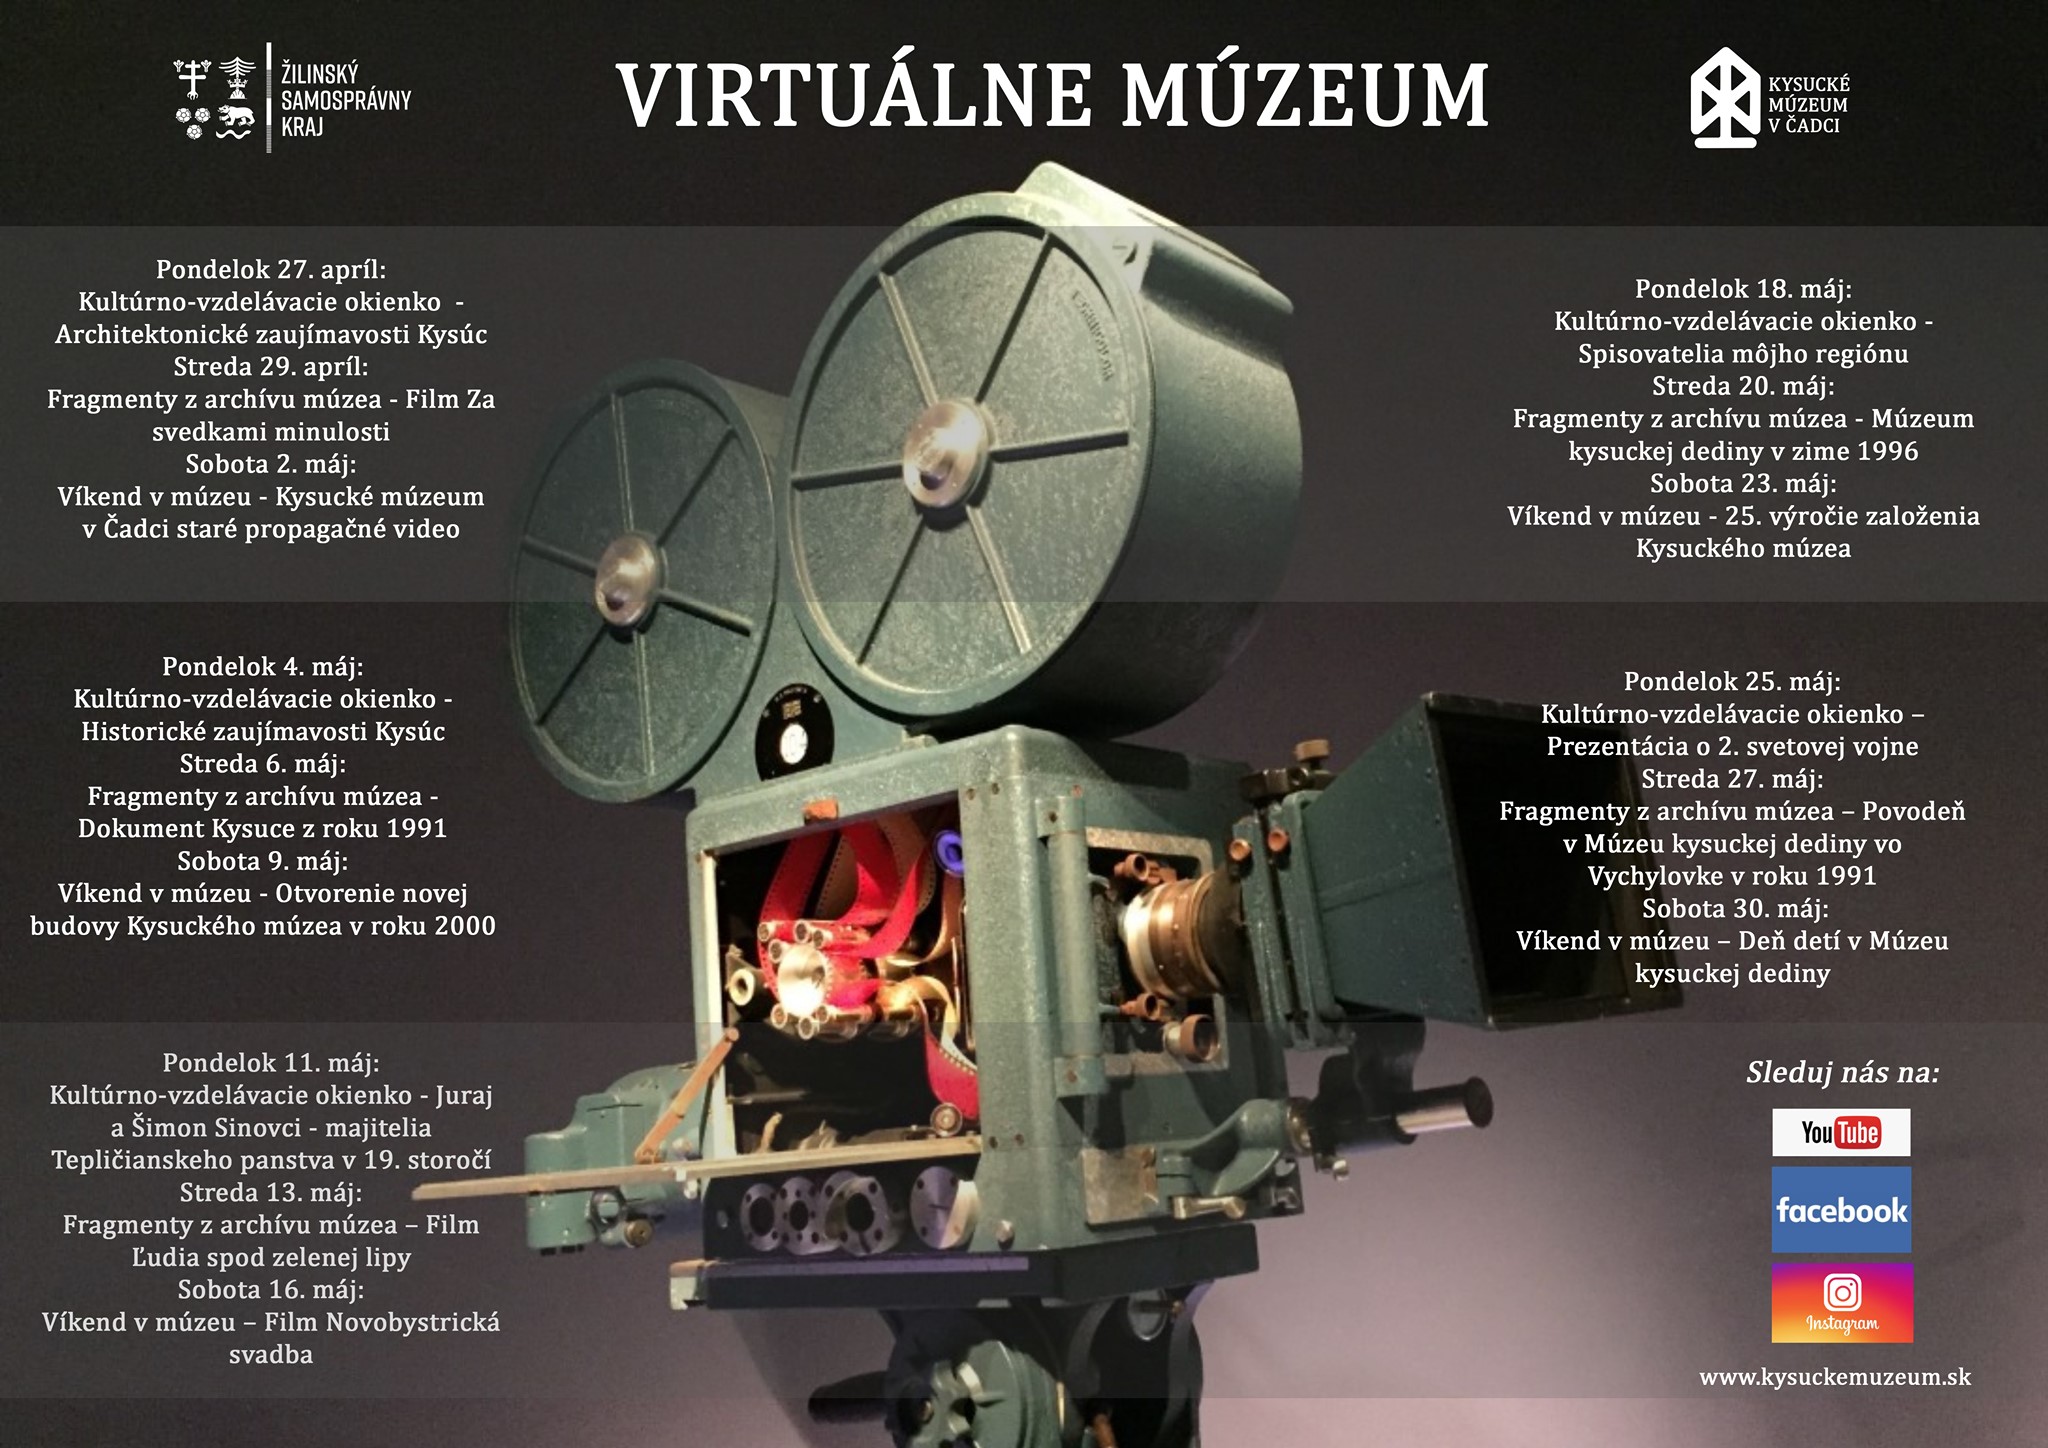 Virtuálne múzeum v Krásne nad Kysucou